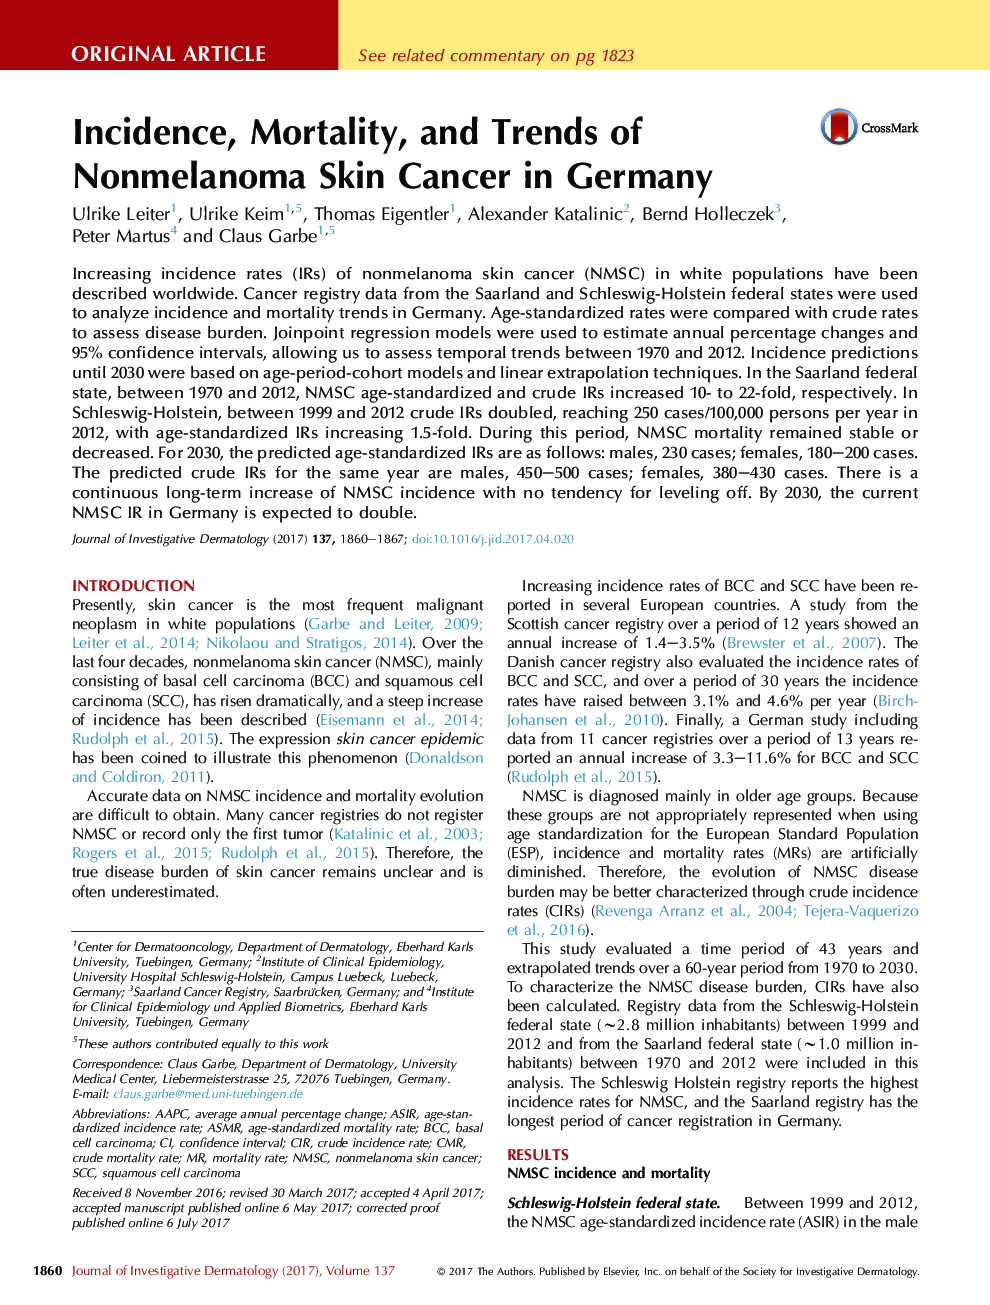 بروز، مرگ و میر و روند سرطان پوست غیر ملانوم در آلمان 